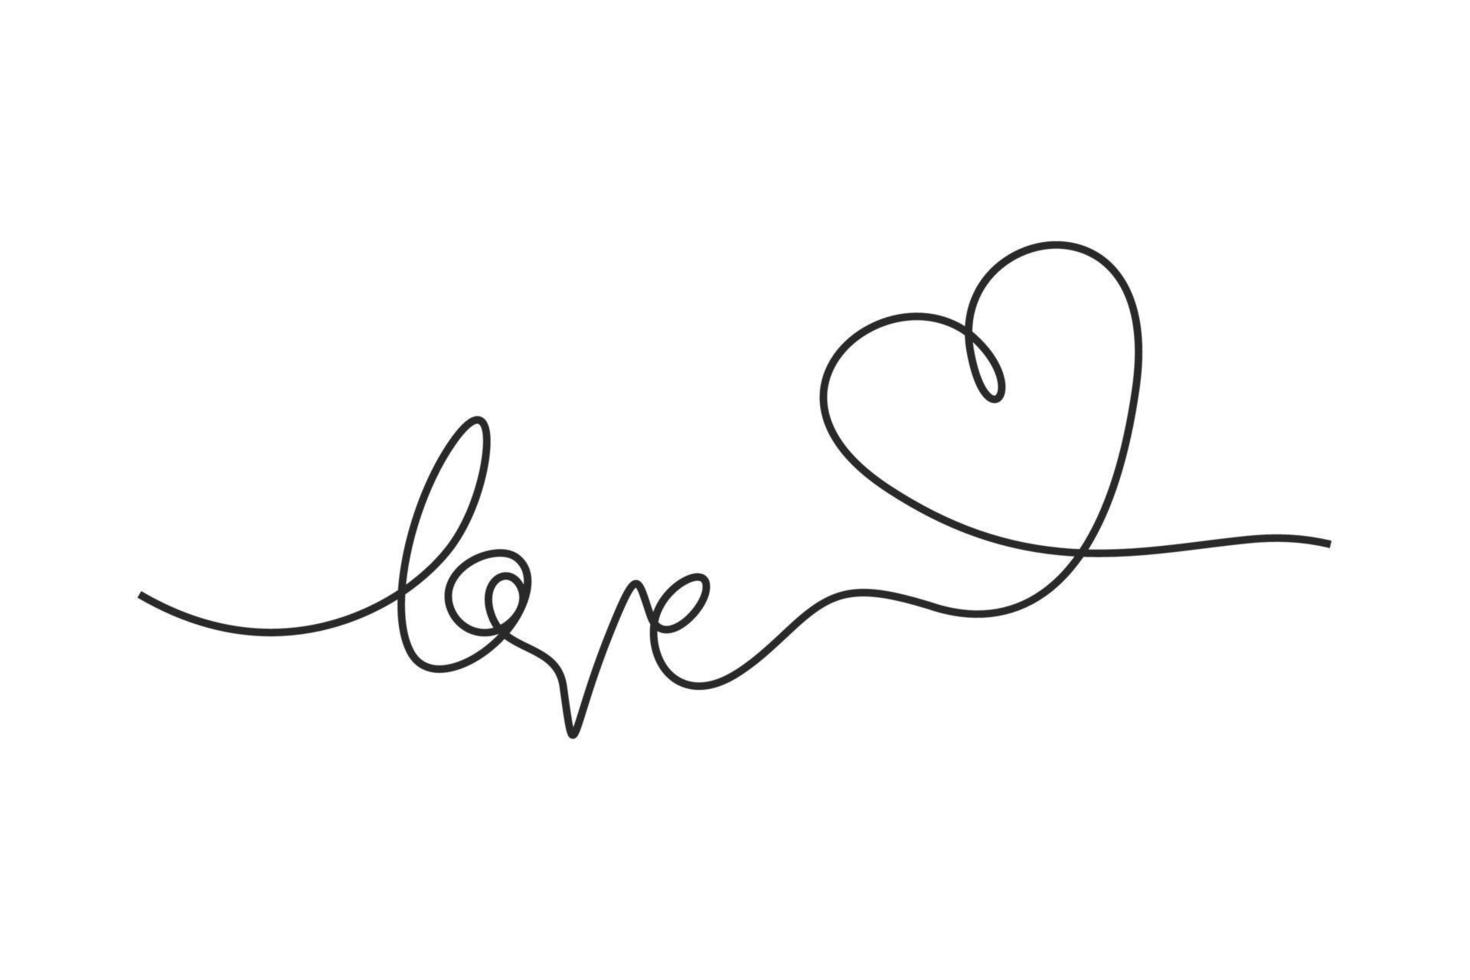 doorlopend een lijn tekening van woord liefde illustratie vector